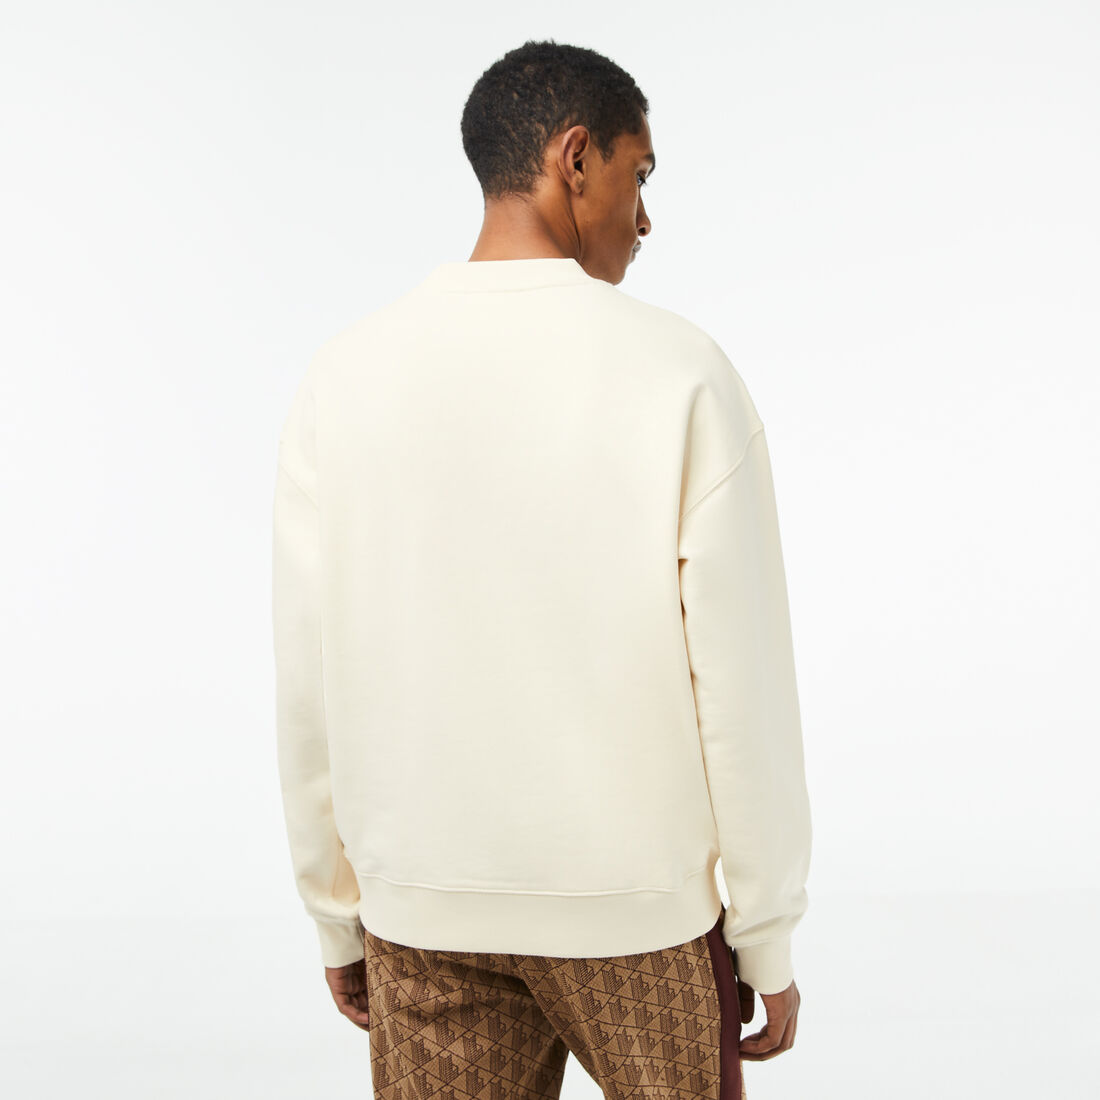 Lacoste Round Neck Loose Fit Printed Sweatshirts Herren Weiß | ESPU-94638